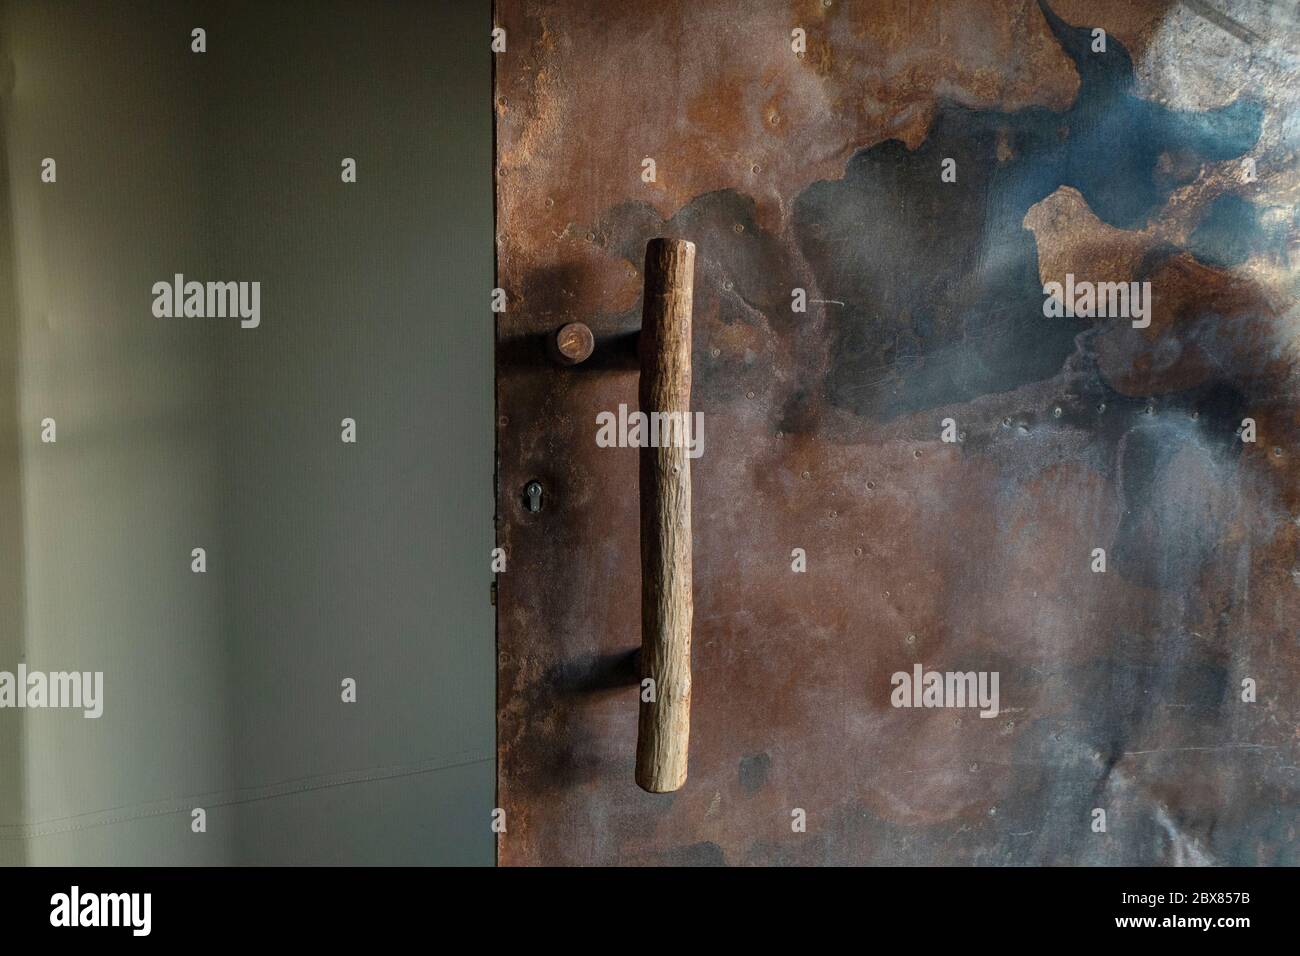 La porta in metallo molto ruvida e arrugginita ha una lunga maniglia rustica in legno. Foto Stock